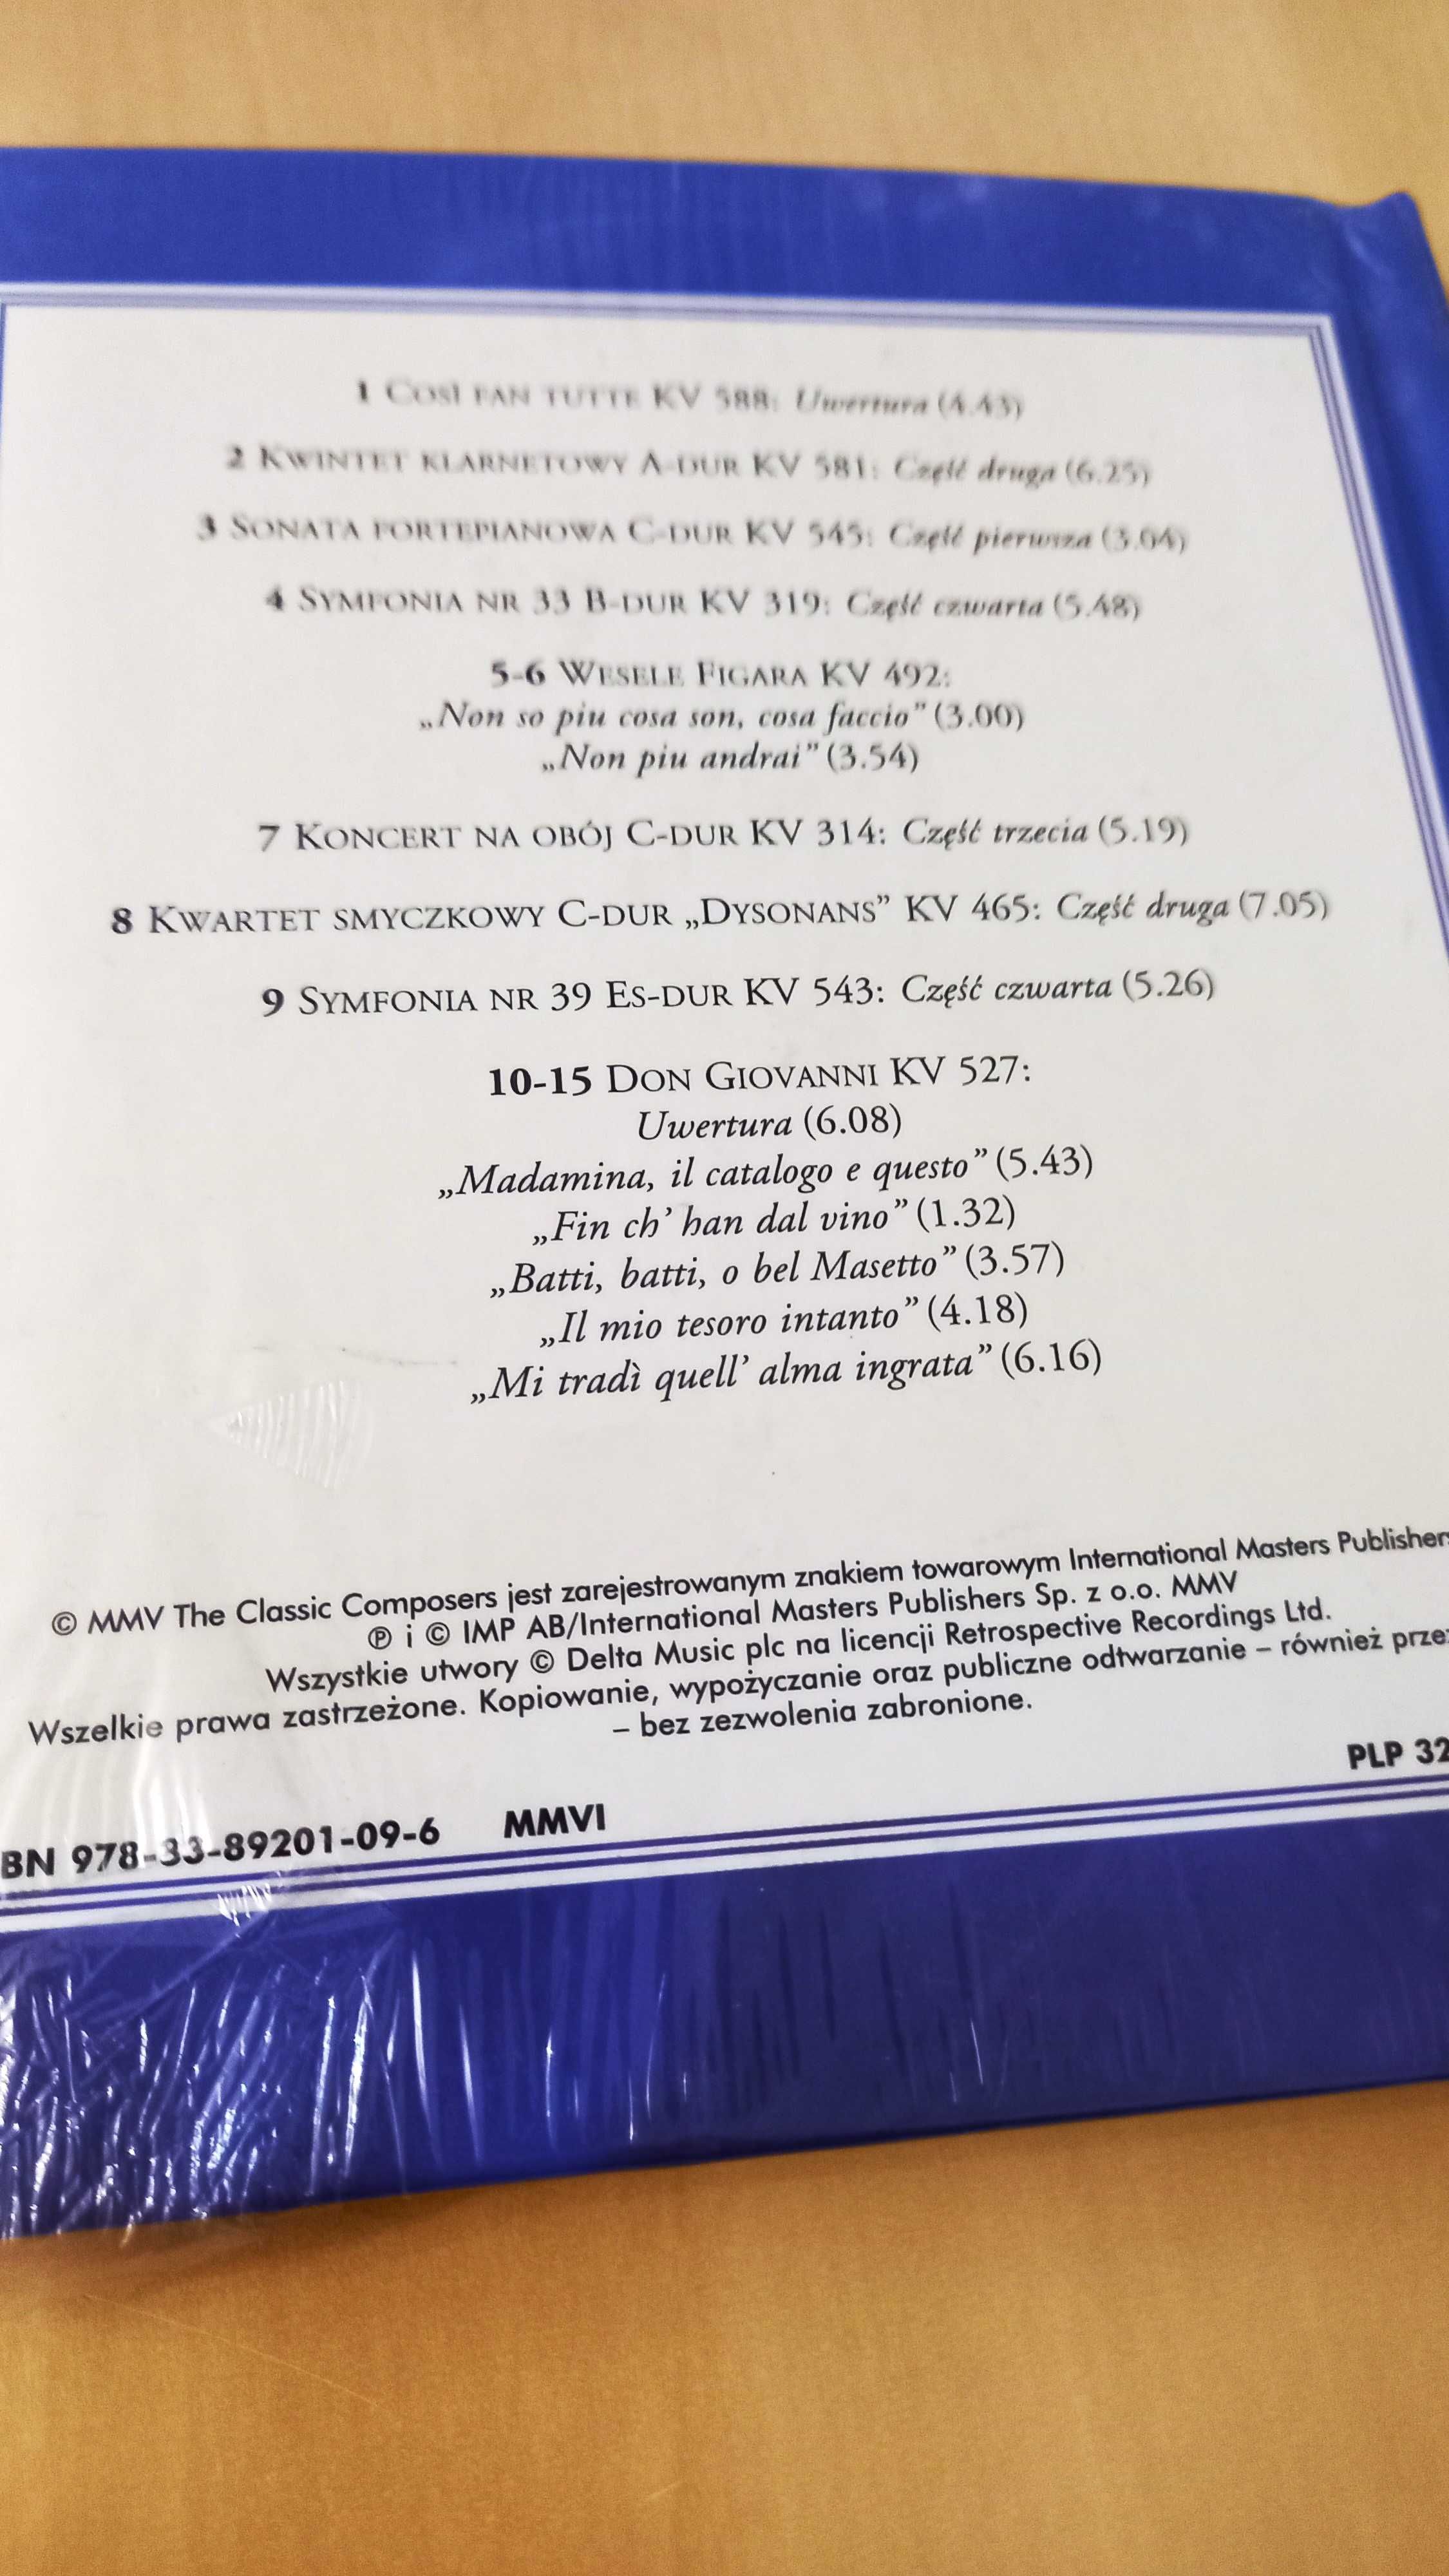 Nowa płyta CD Mozart Najwspanialsze opery Mistrzowie muzyki klasycznej